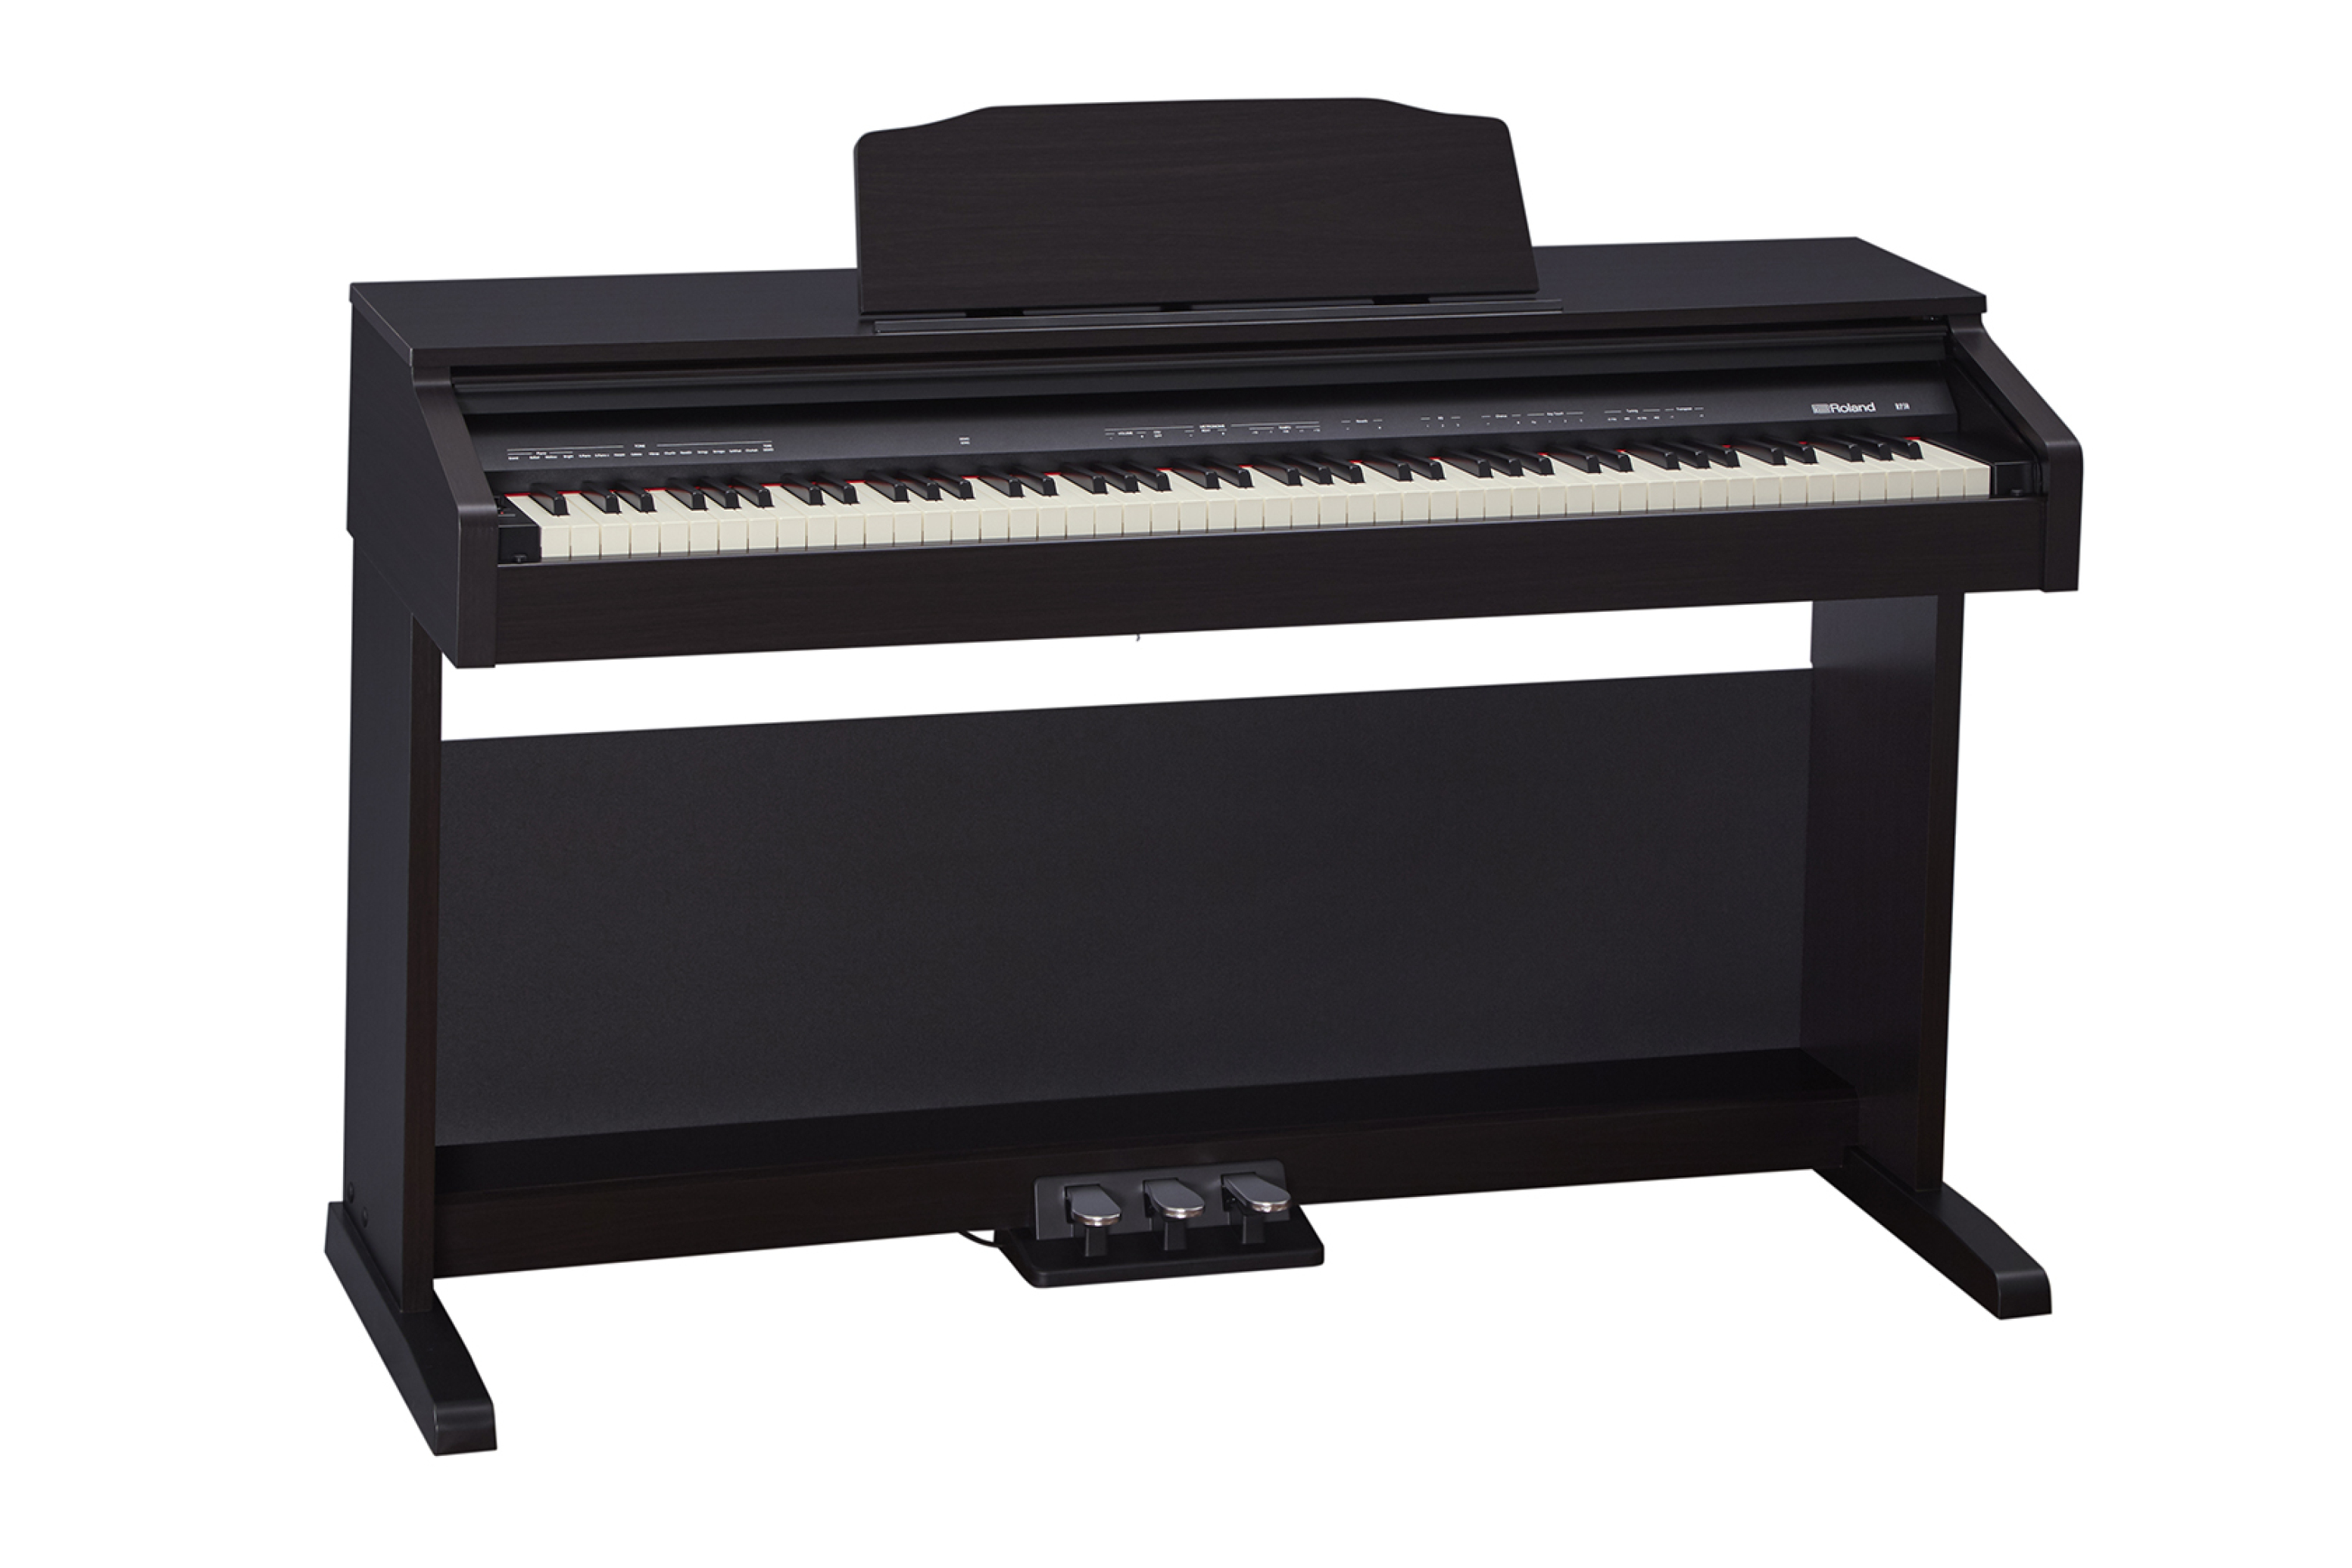  خرید پیانو دیجیتال رولند RP30 مشکی نمای مقابل 